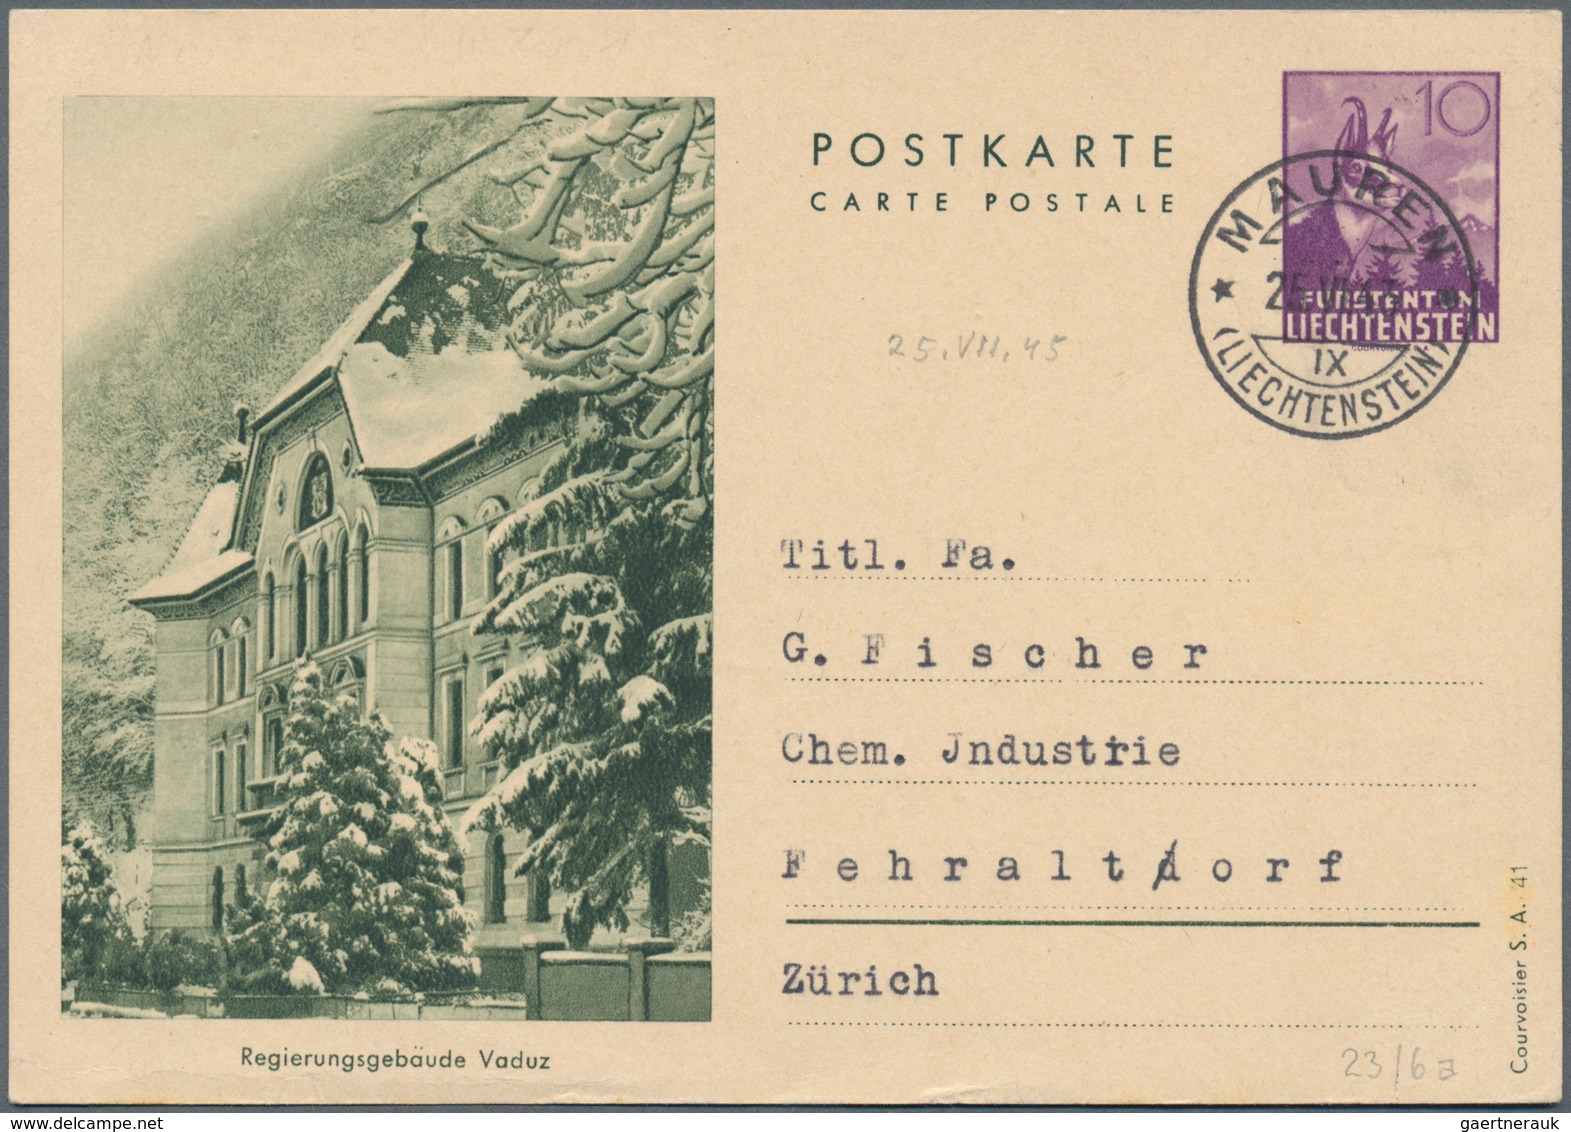 Liechtenstein - Ganzsachen: 1941, 10 Rp. Gämse mit Druckvermerk S.A.41, alle Bilder, 6 verschiedene